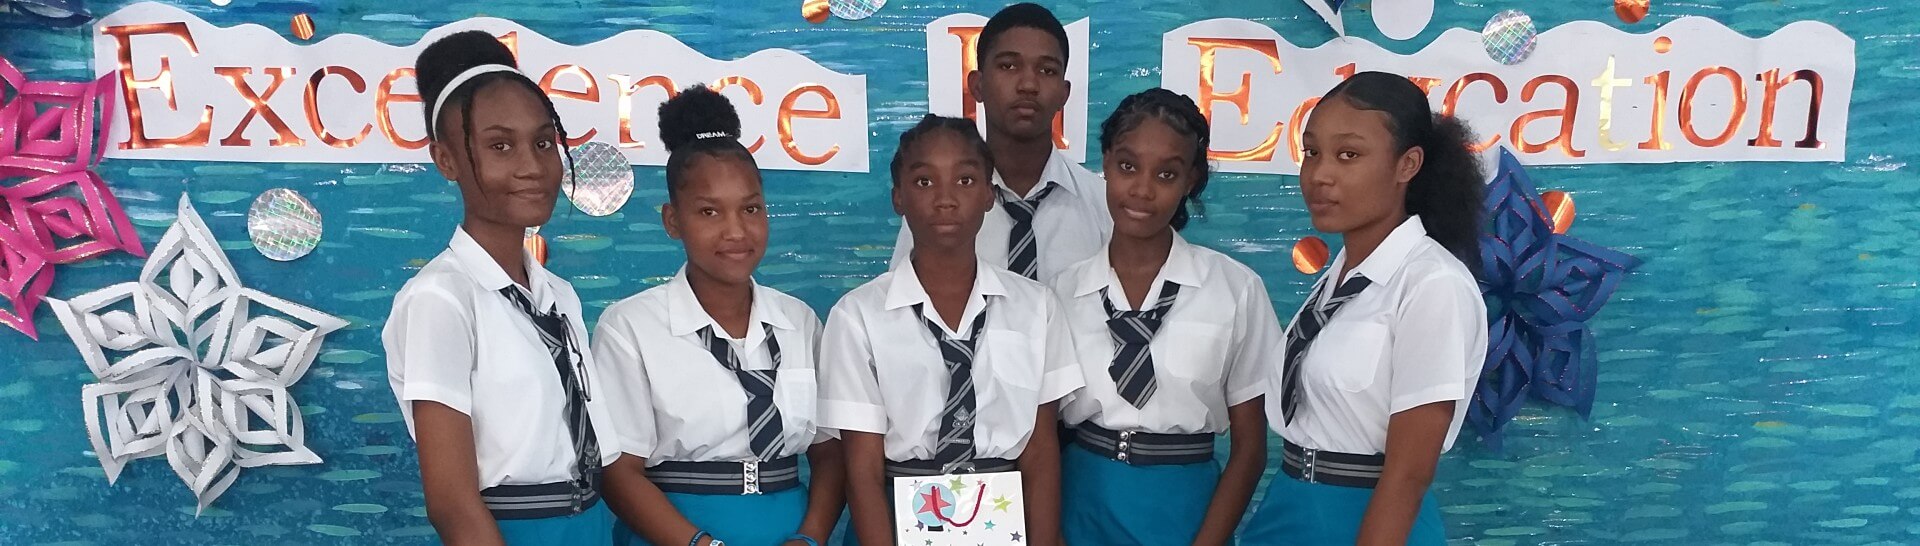 Alexandra School, Barbados - Excellence In Education